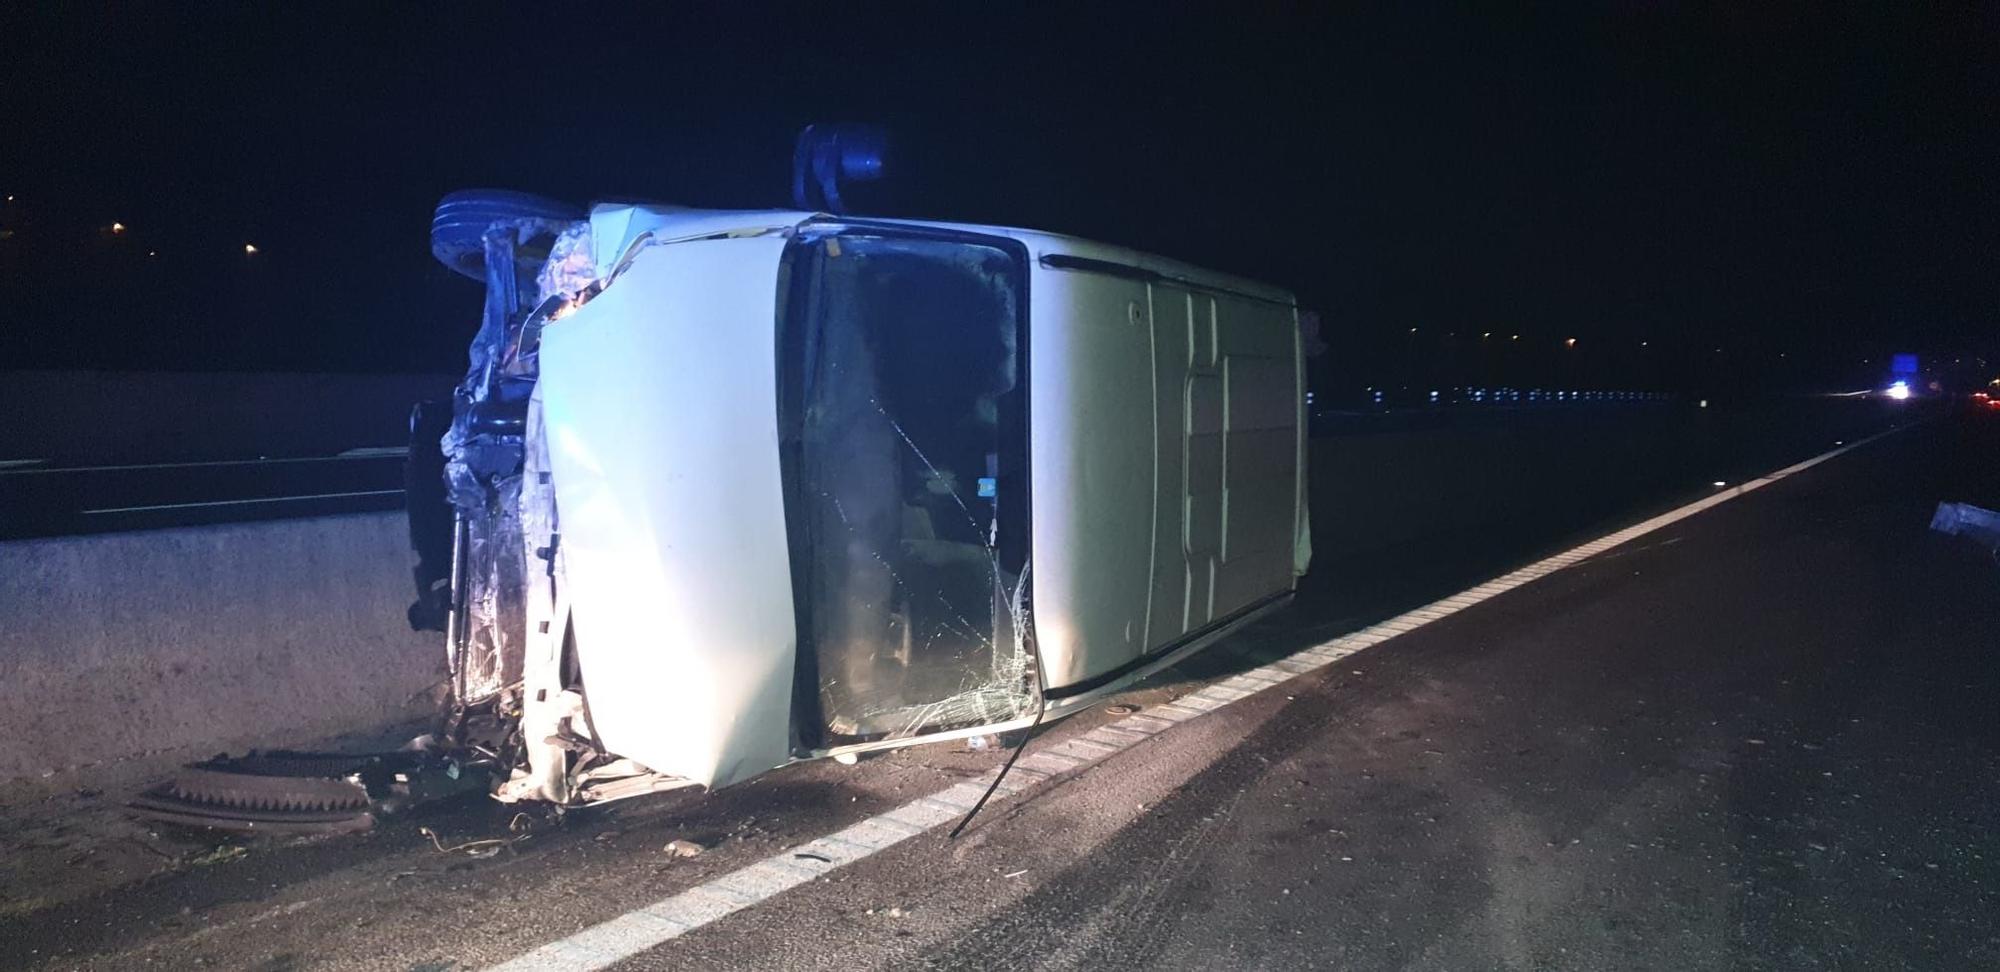 Aparatoso accidente en la Autovía do Salnés con dos vehículos implicados y varios heridos